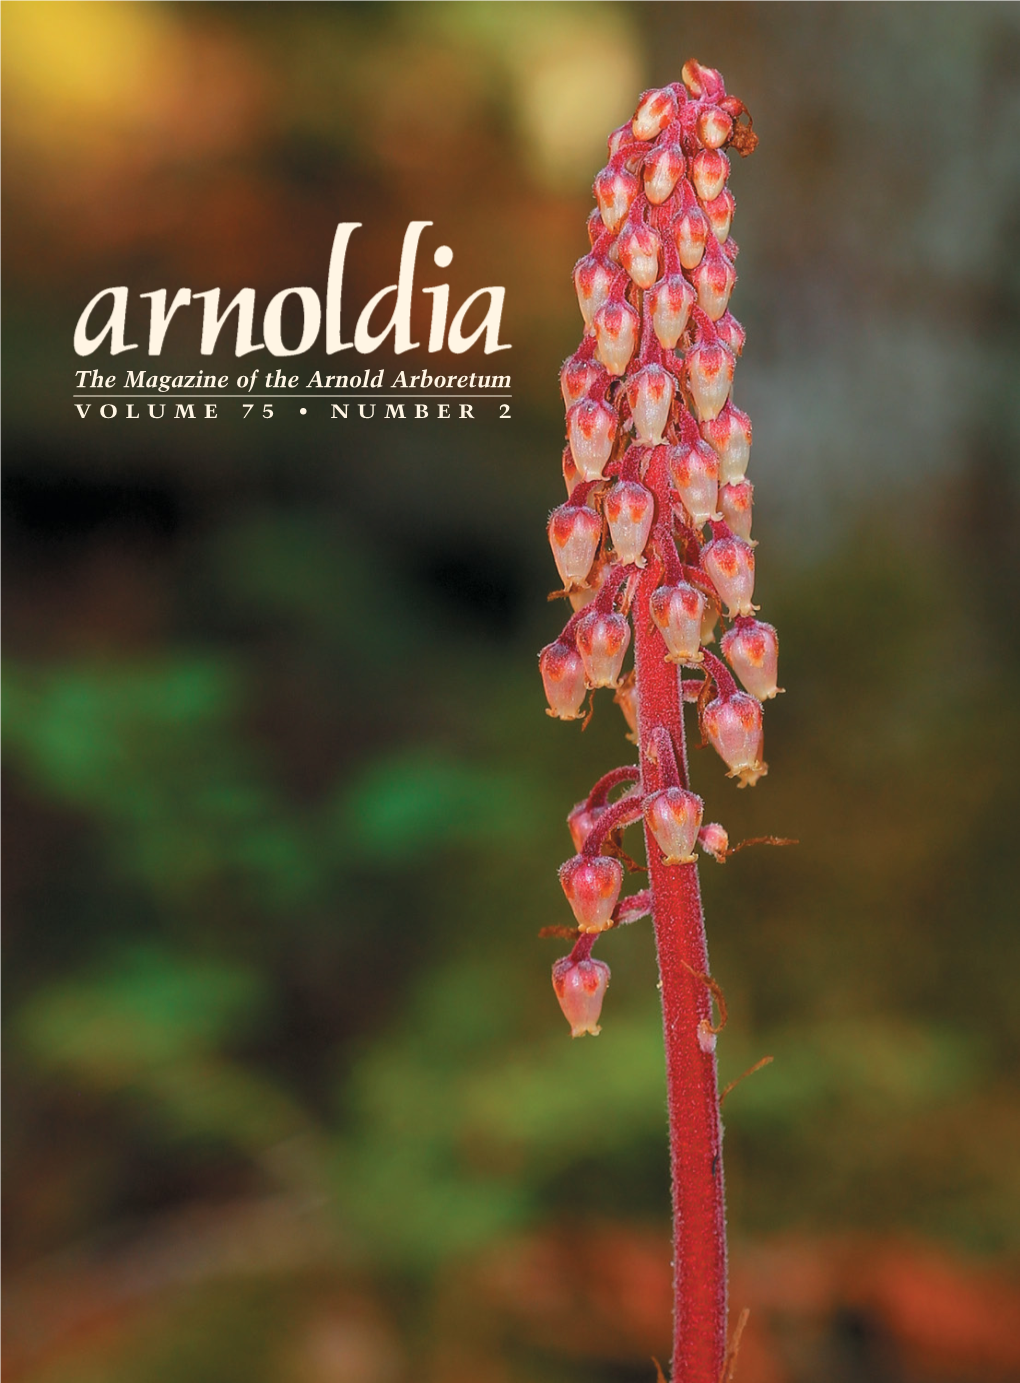 The Magazine of the Arnold Arboretum VOLUME 75 • NUMBER 2